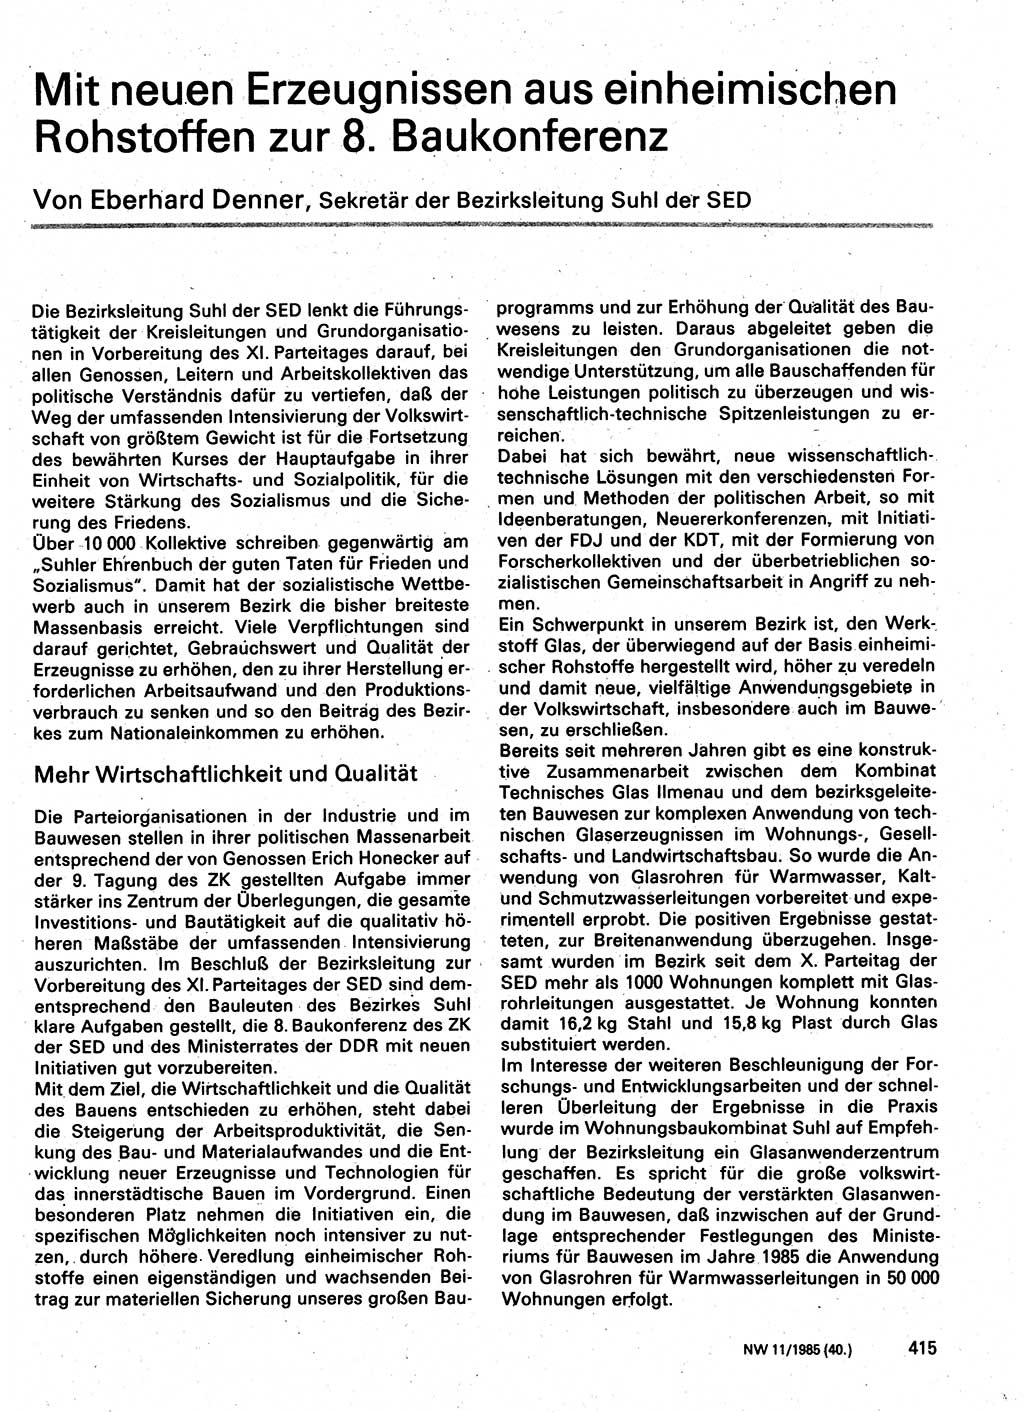 Neuer Weg (NW), Organ des Zentralkomitees (ZK) der SED (Sozialistische Einheitspartei Deutschlands) für Fragen des Parteilebens, 40. Jahrgang [Deutsche Demokratische Republik (DDR)] 1985, Seite 415 (NW ZK SED DDR 1985, S. 415)